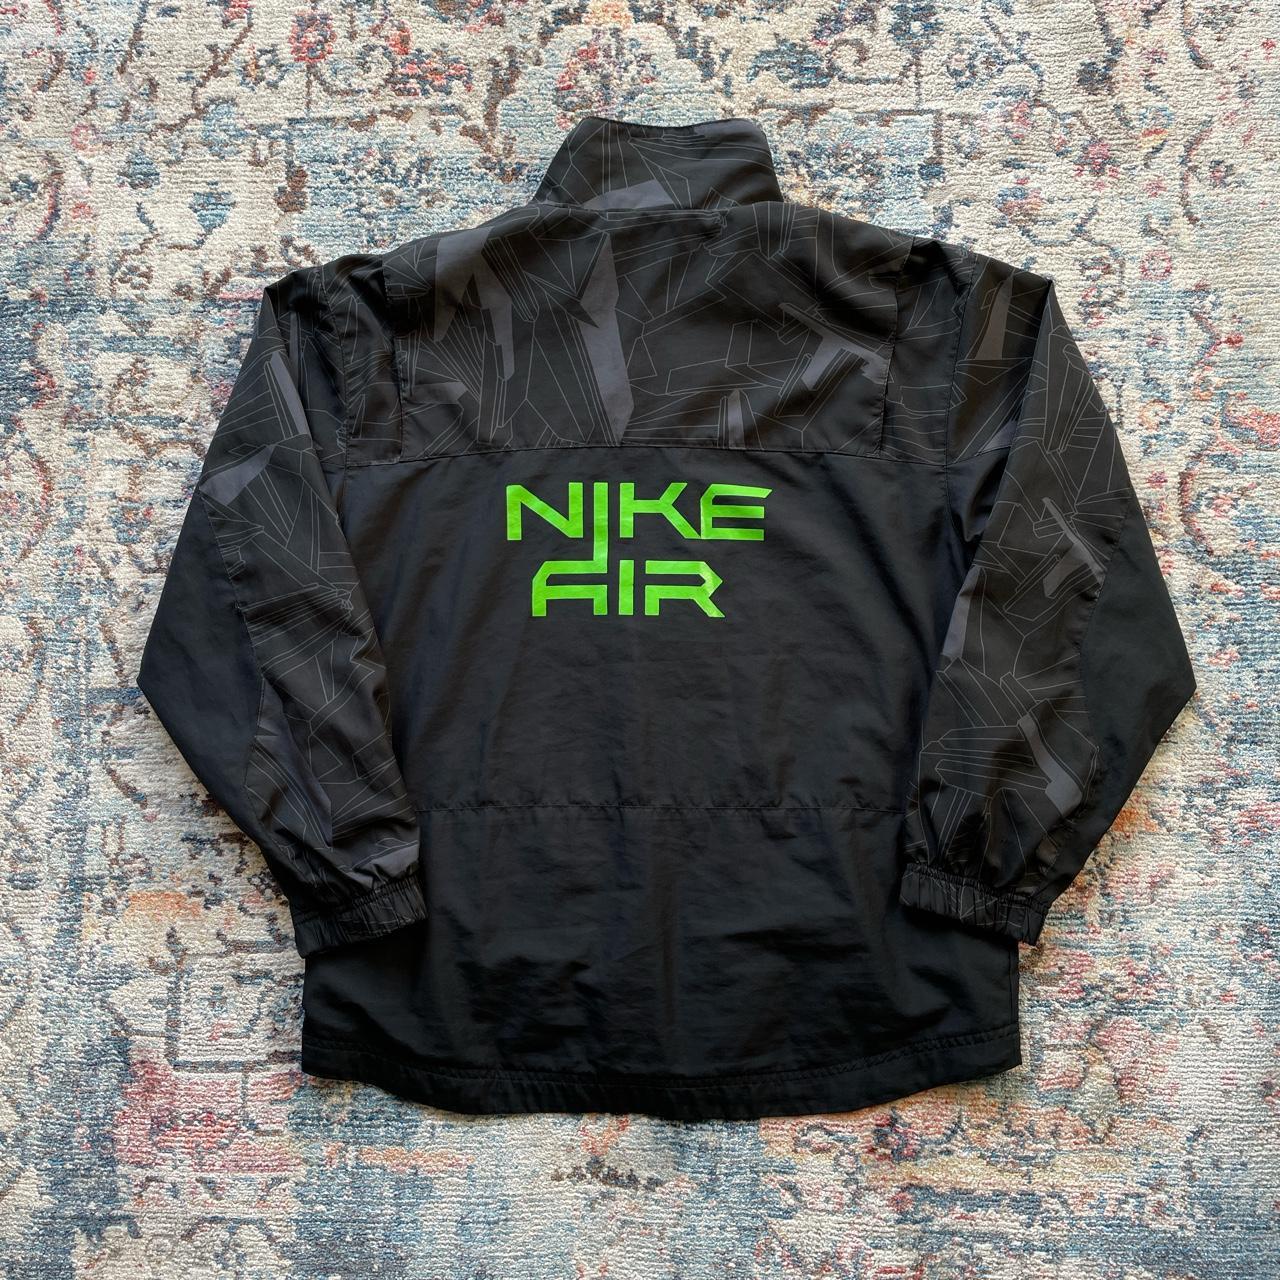 Vintage Nike Air Black Jacket